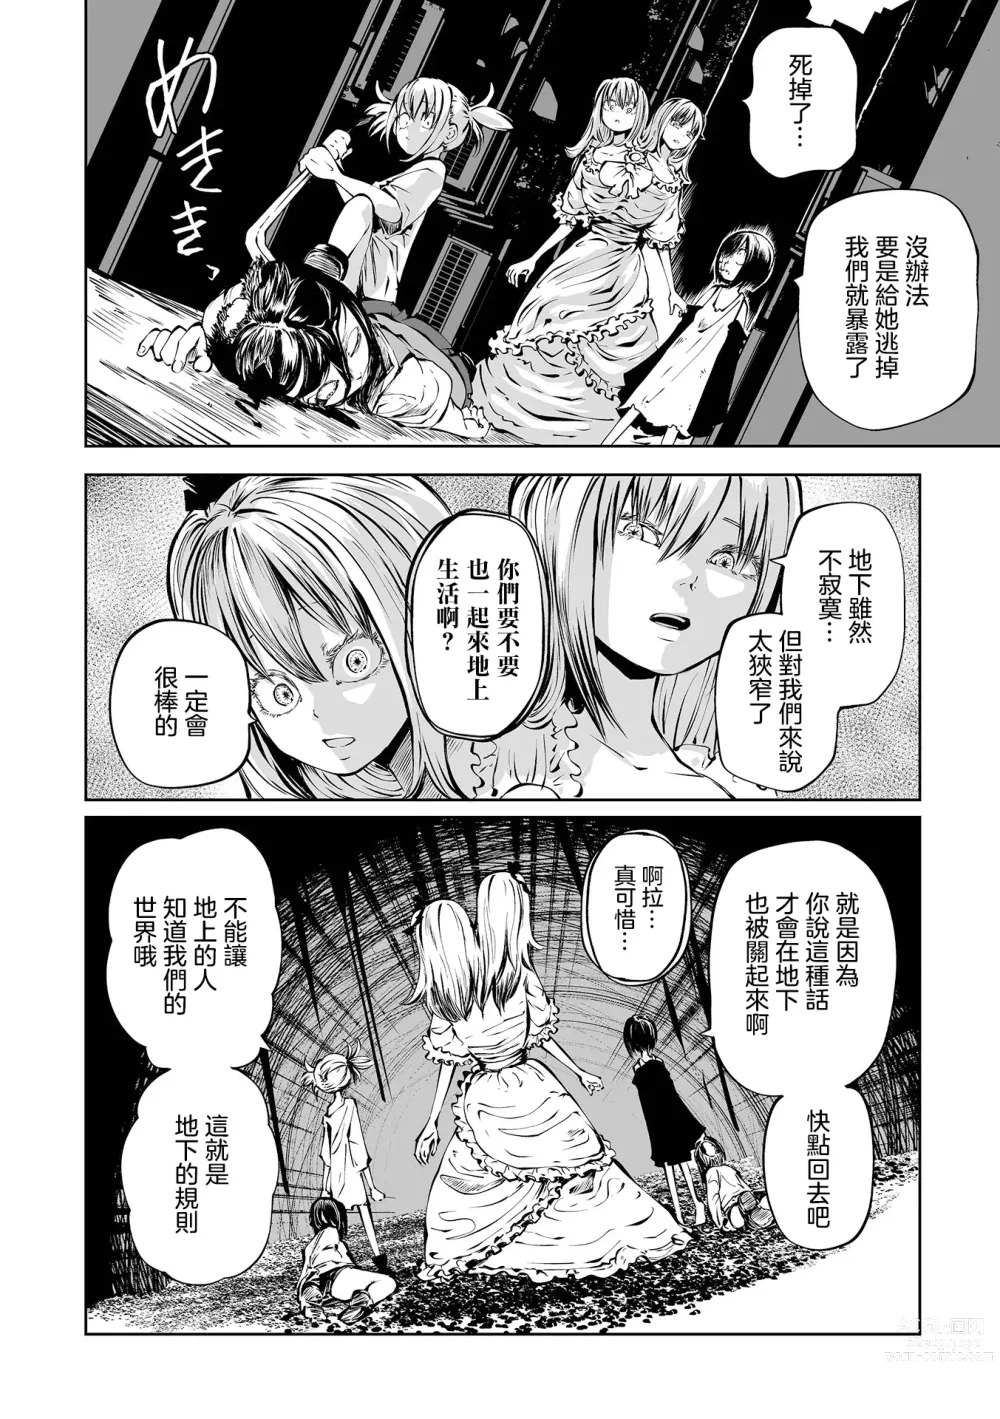 Page 49 of manga 地下生活